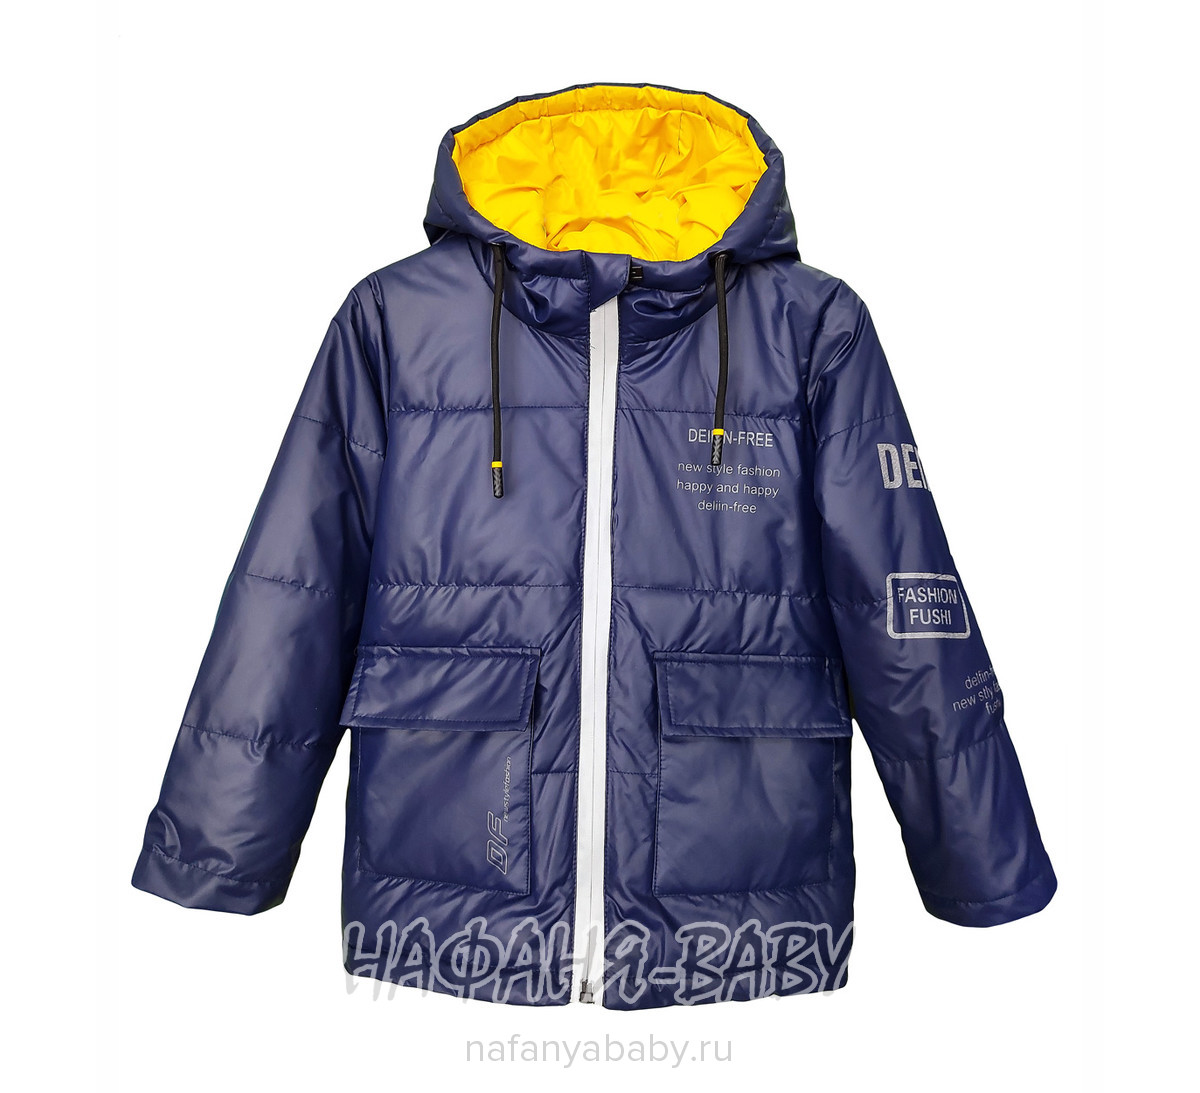 Детская демисезонная куртка DELFIN-FREE арт: 2155, 1-4 года, 5-9 лет, оптом Китай (Пекин)